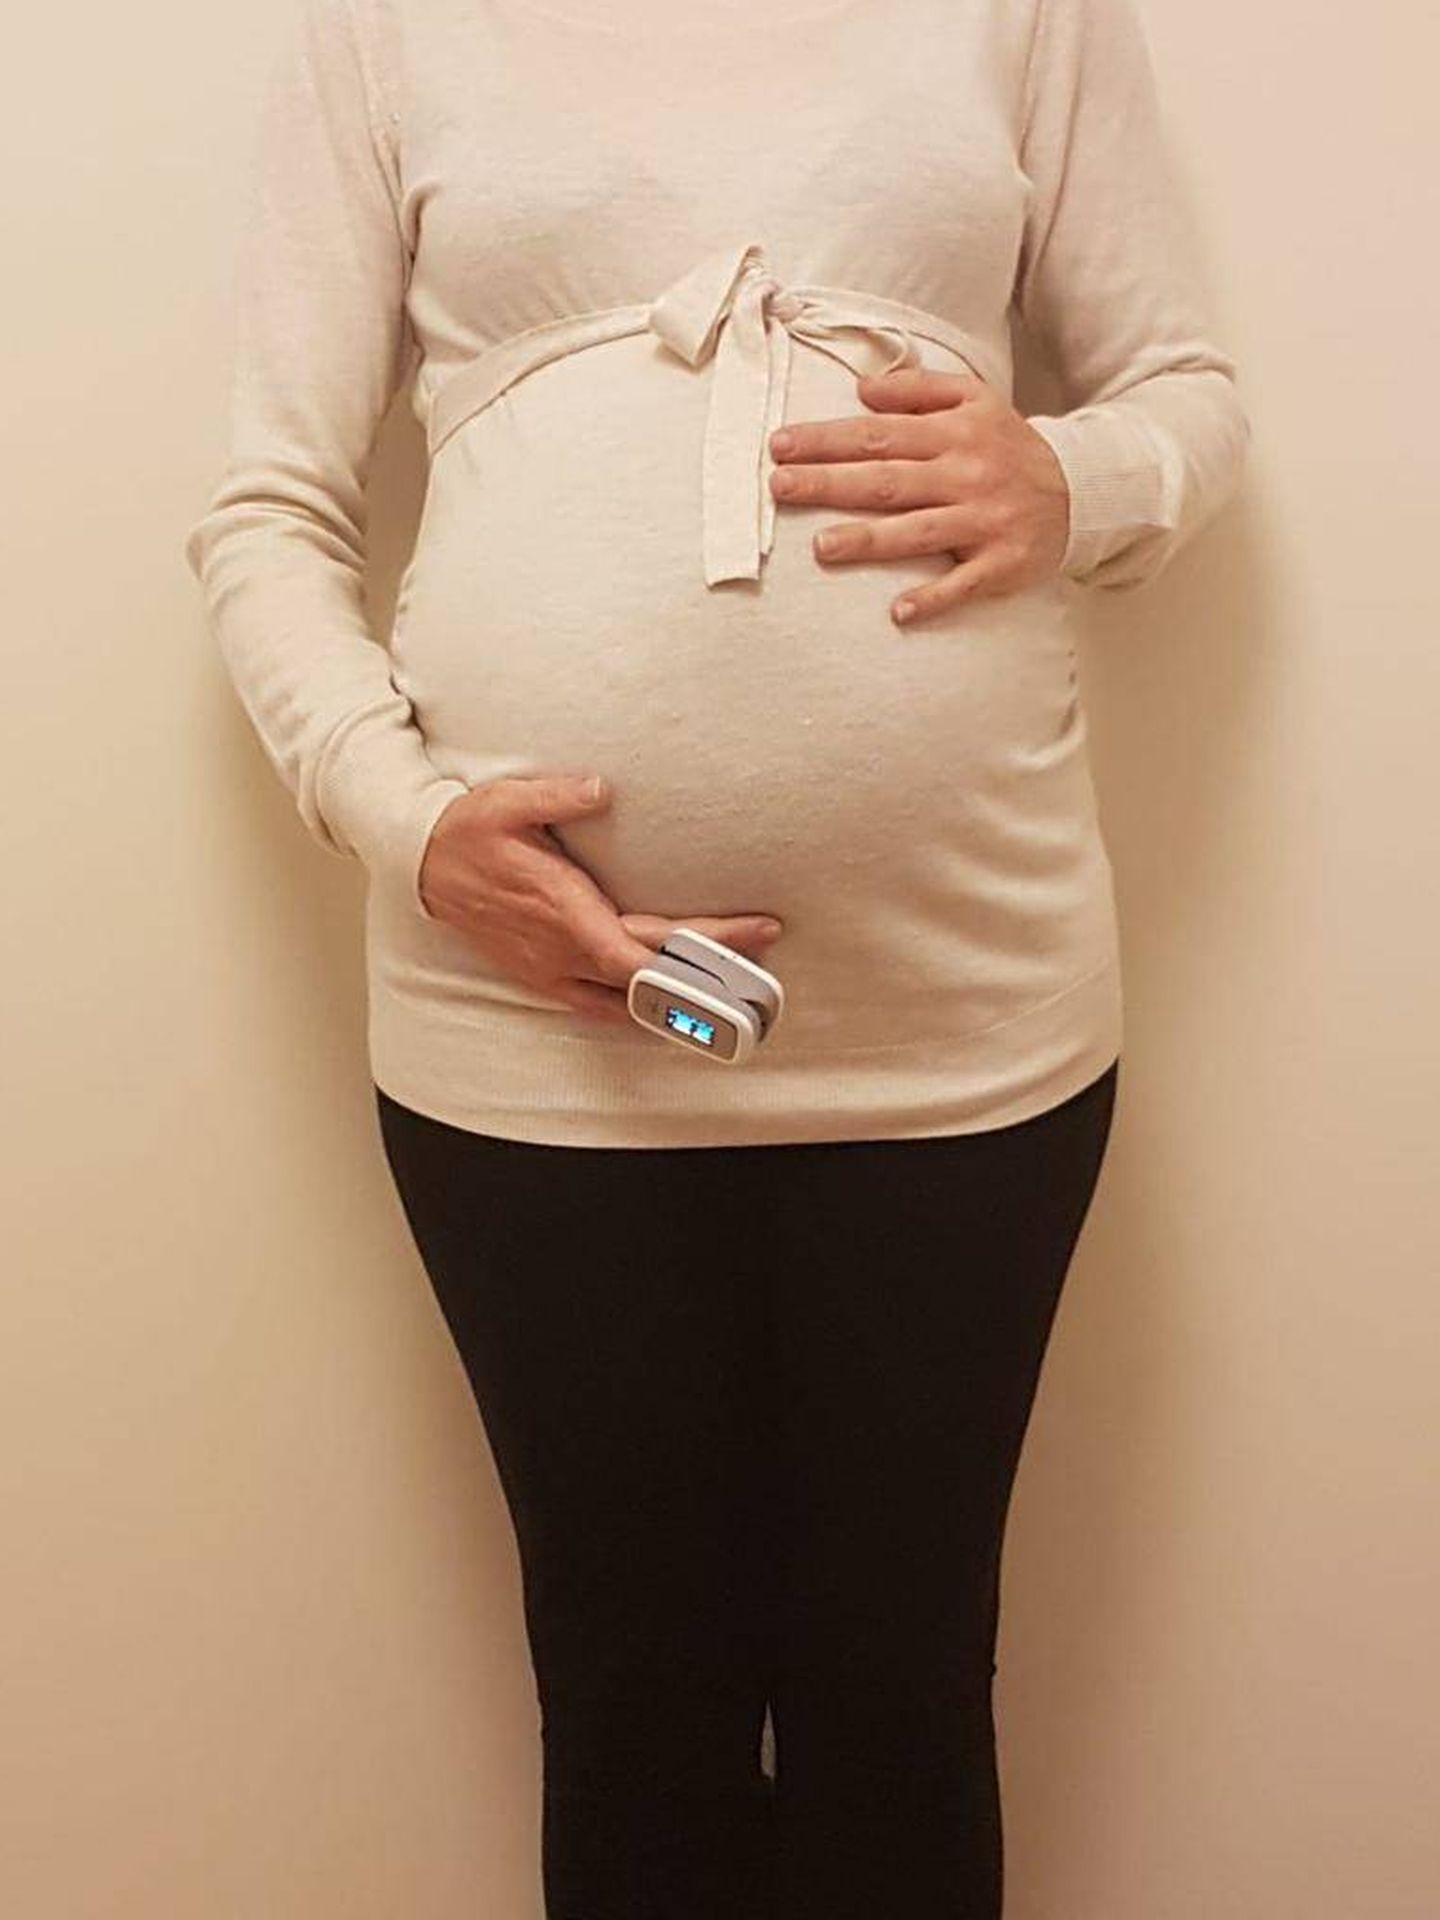 Diana, embarazada de 31 semanas, se mide frecuentemente la saturación de oxígeno en sangre. (Foto cedida)